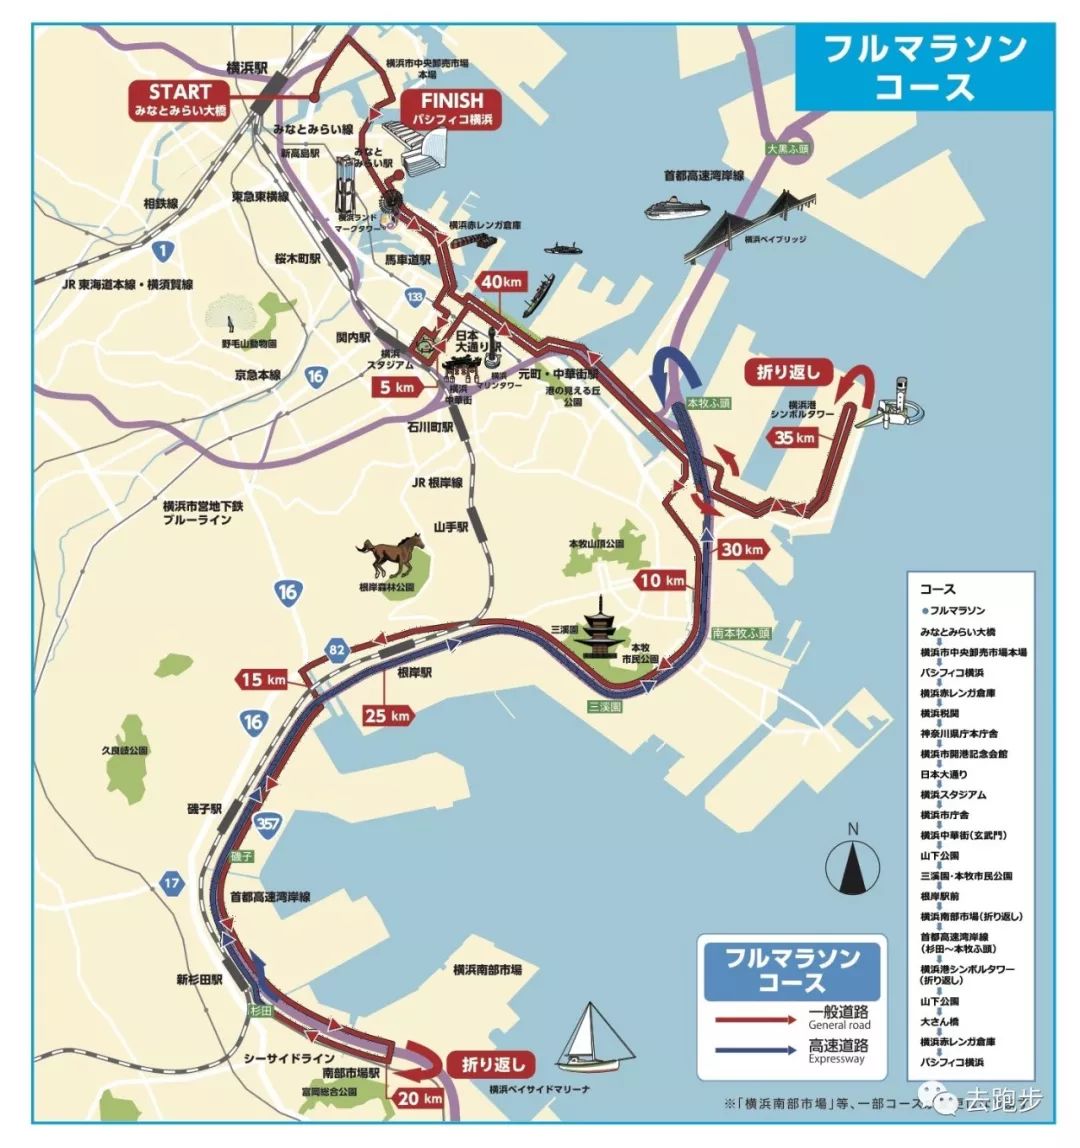 横滨港地图图片